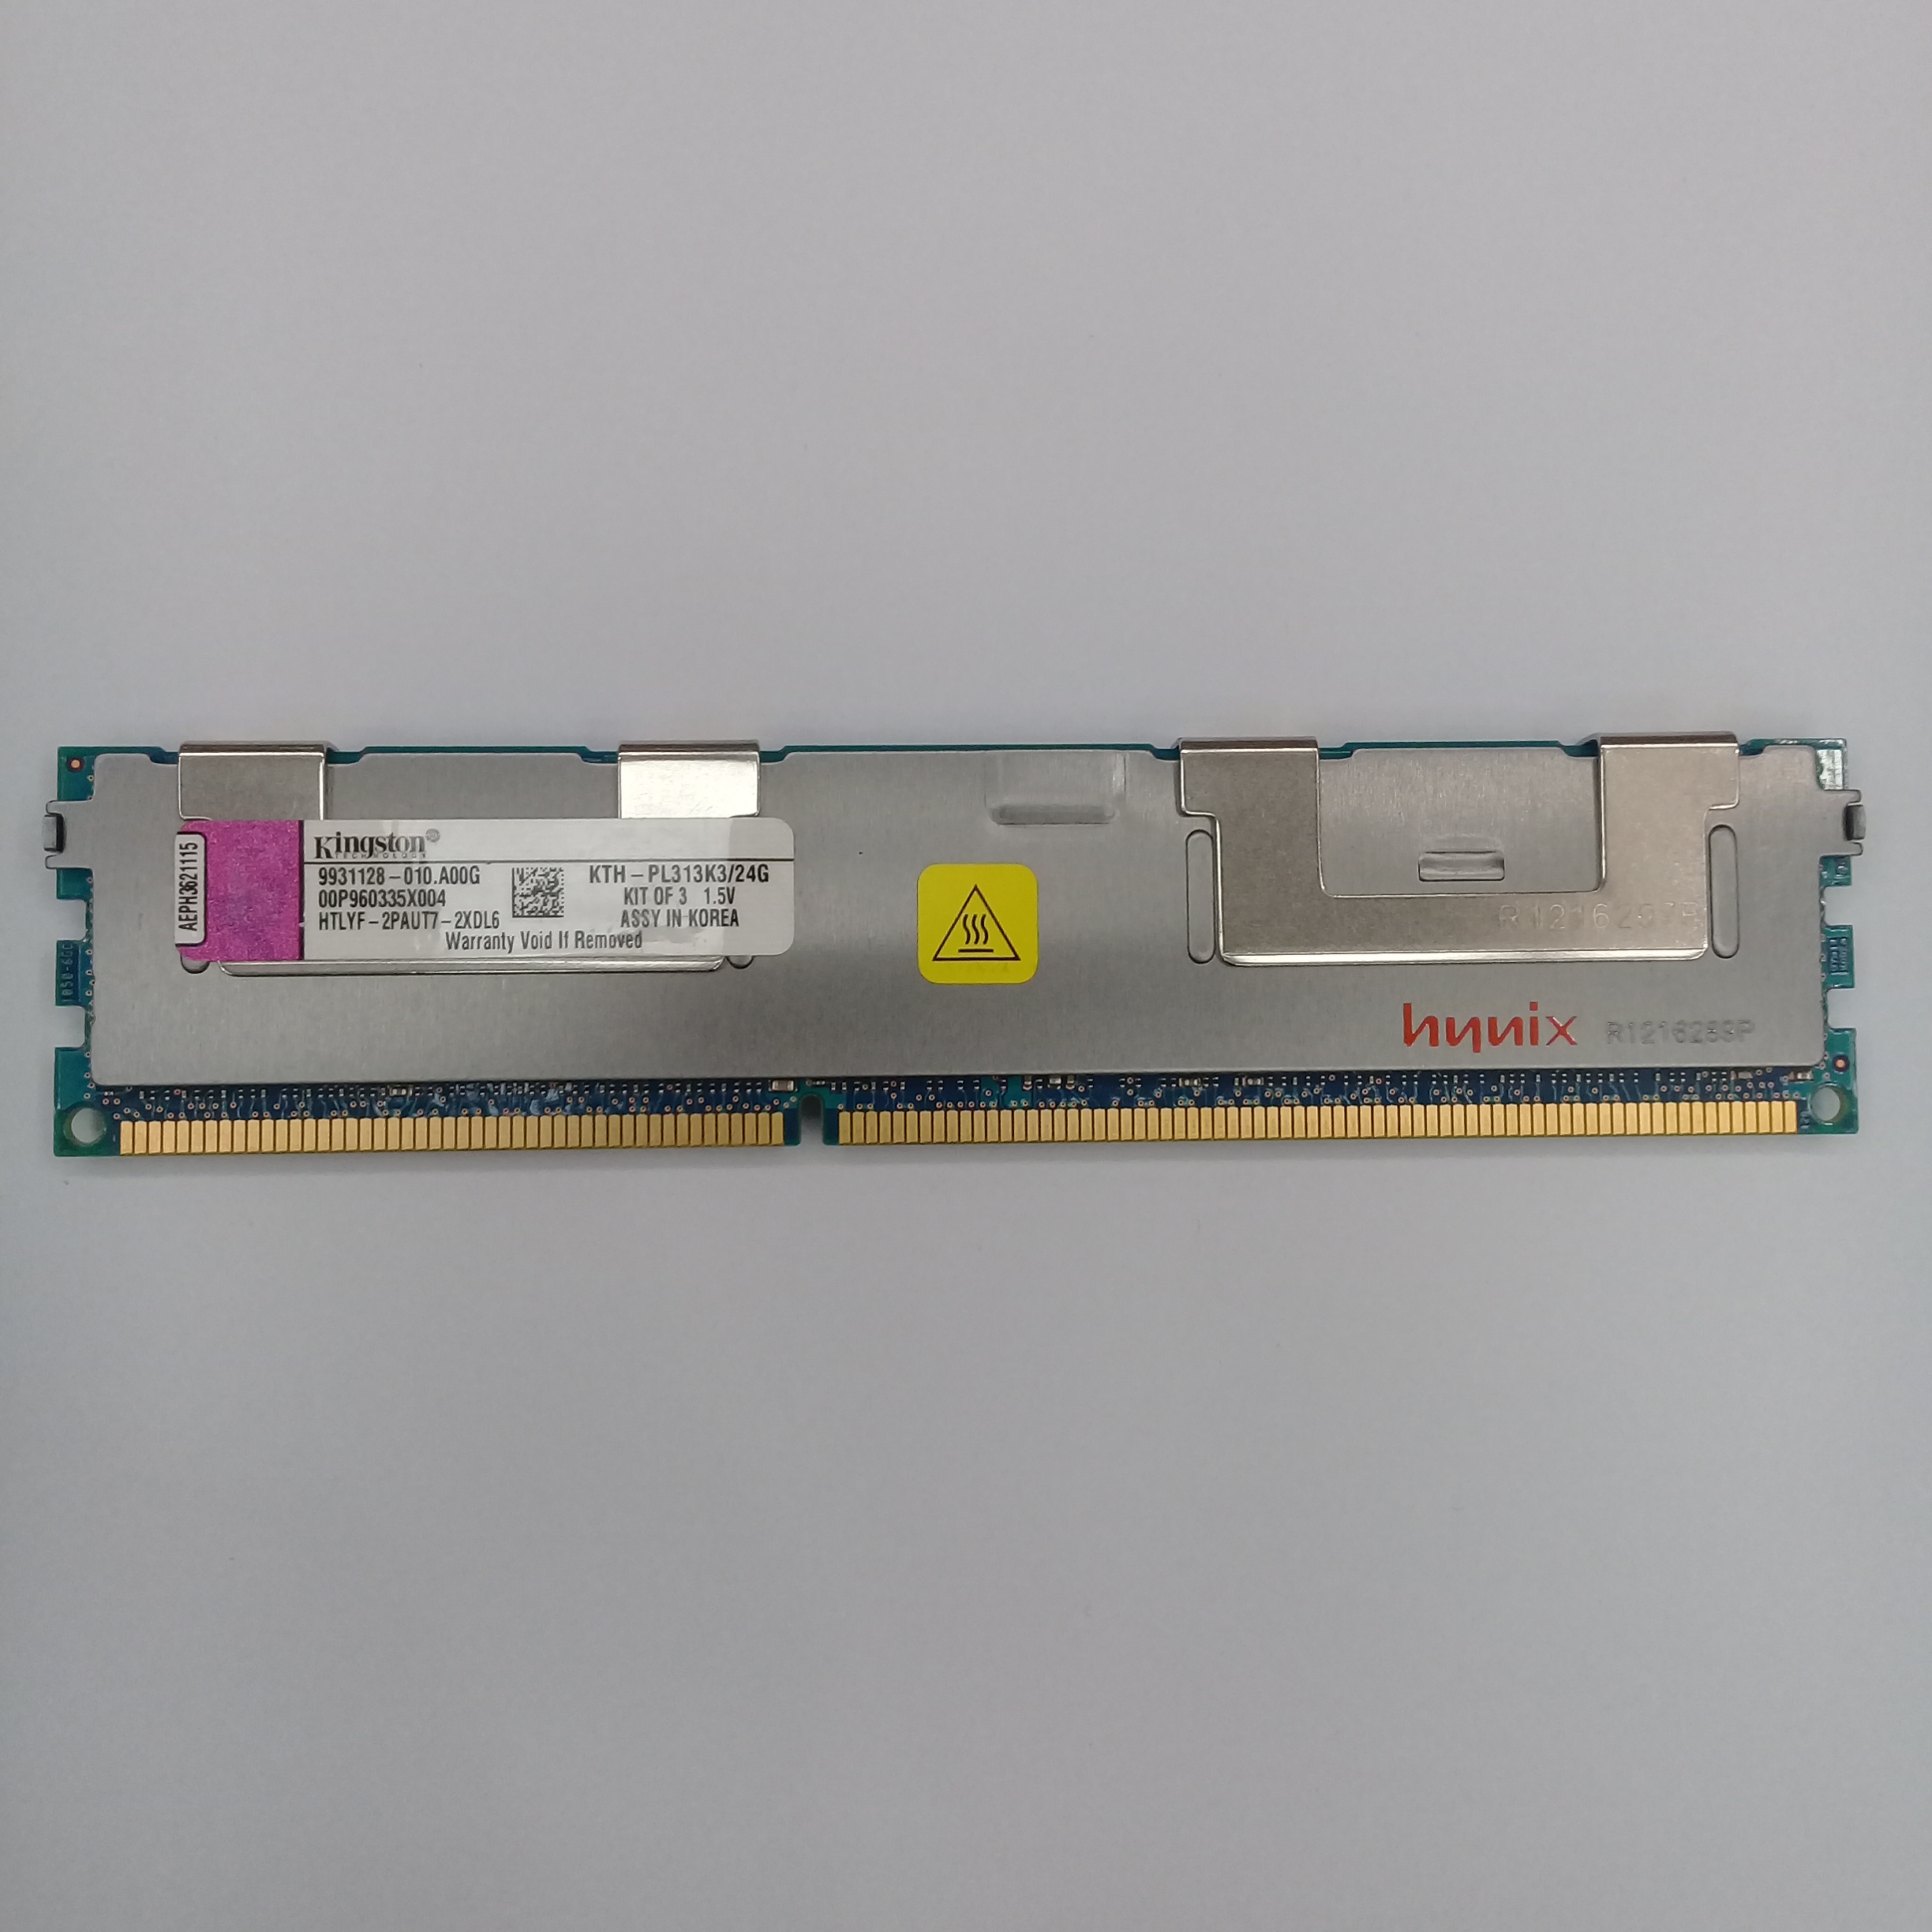 رم سرور DDR3 تک کاناله 1333 مگاهرتز CL9 کینگستون مدل 9931128 ظرفیت 8 گیگابایت